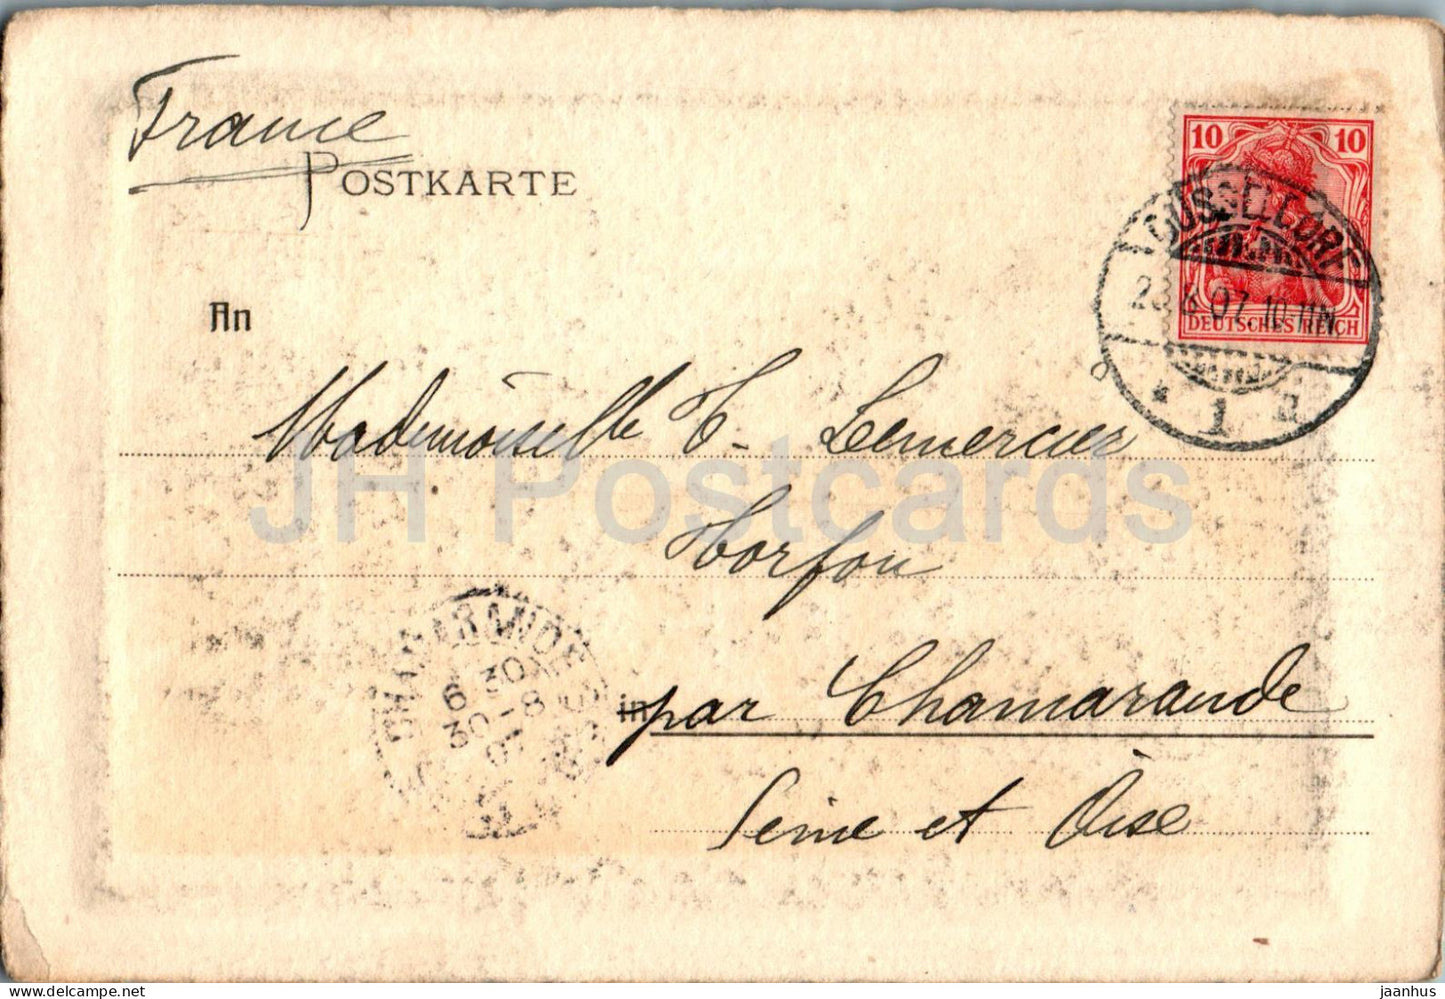 Düsseldorf - Cologne - Ehrenhof des Kunst Palastes - Cour d'honneur - carte postale ancienne - 1907 - Allemagne - utilisé 